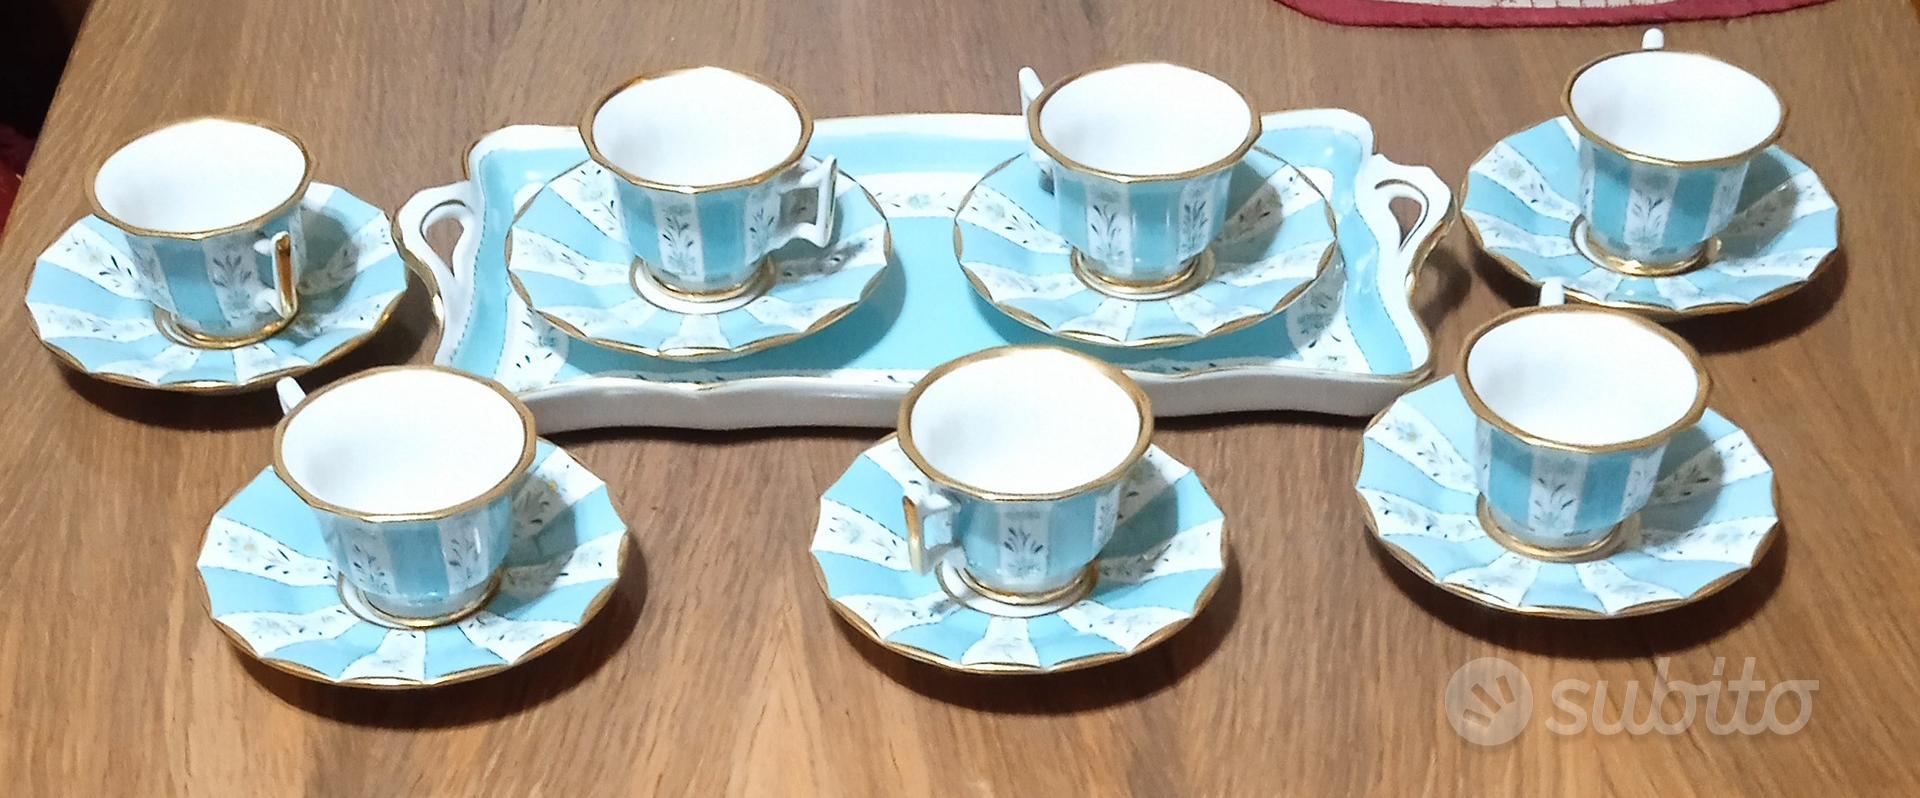 servizio da caffè decorato a mano - Arredamento e Casalinghi In vendita a  Brescia